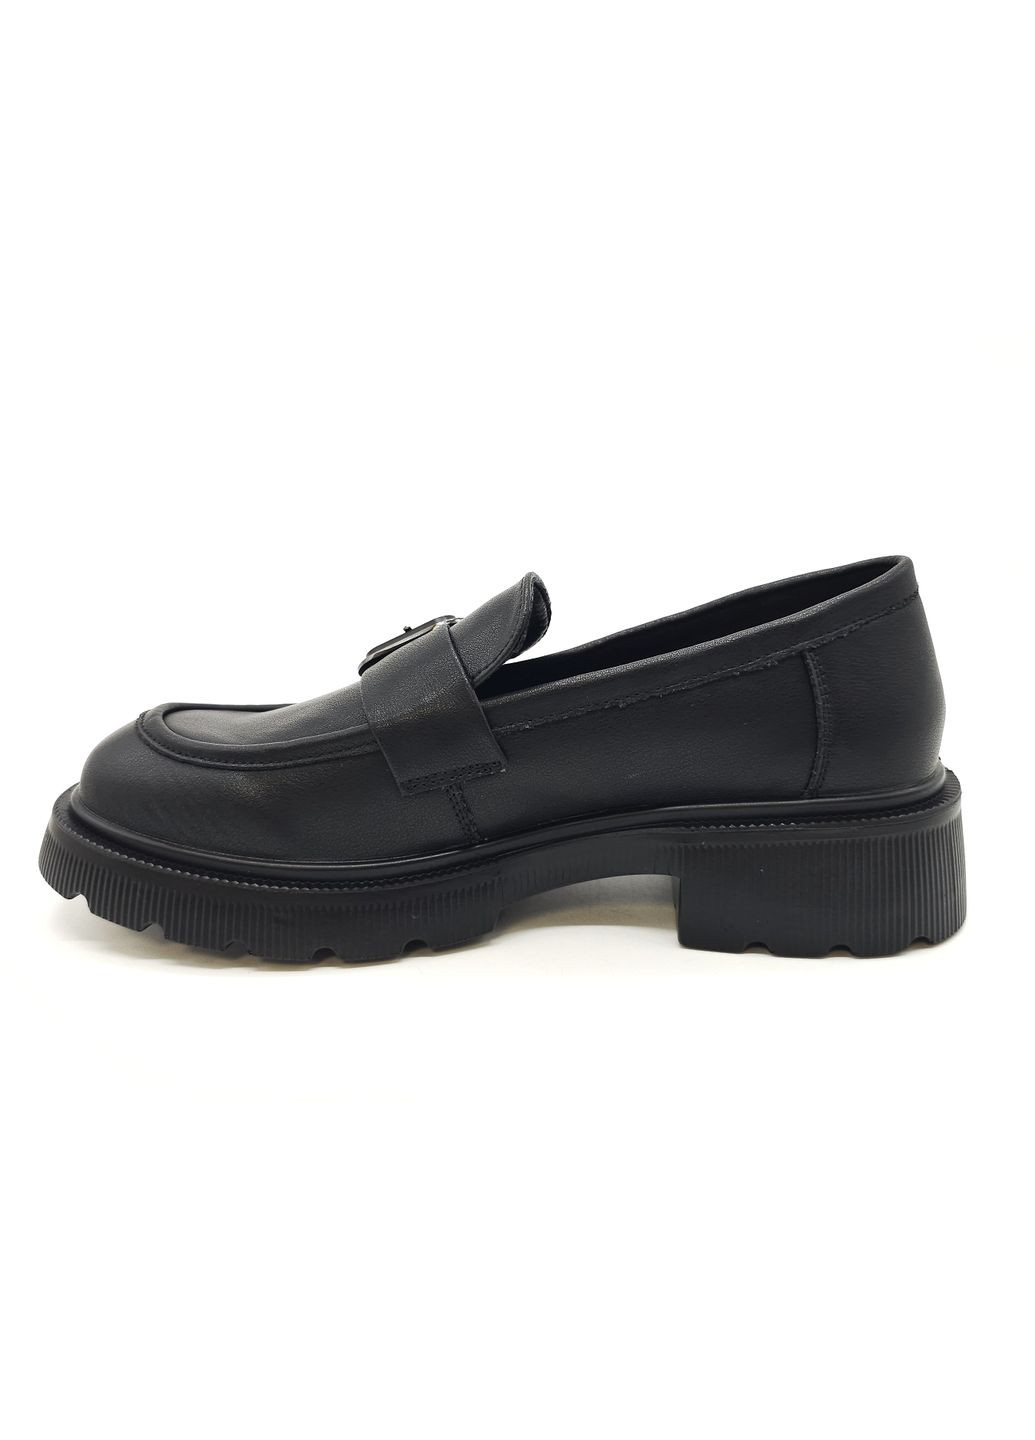 Женские туфли черные кожаные PP-19-11 23 см(р) PL PS